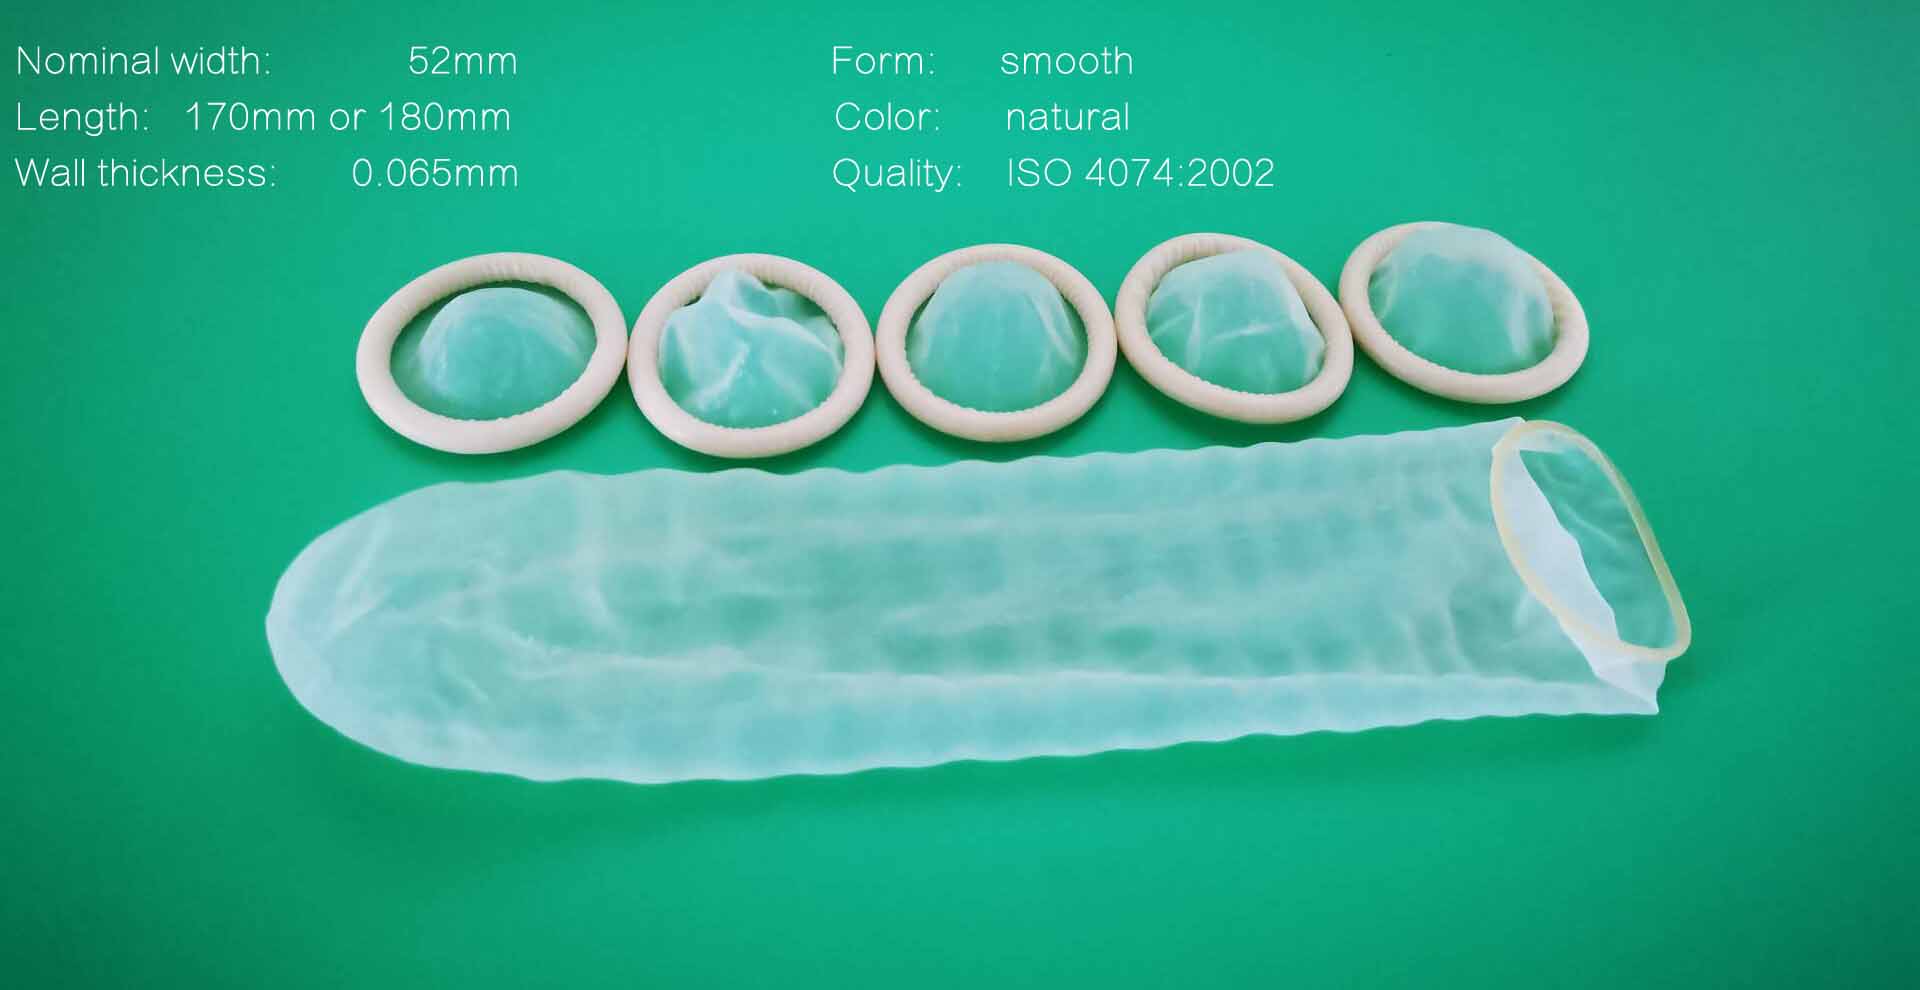 ultrasound probe cover condom